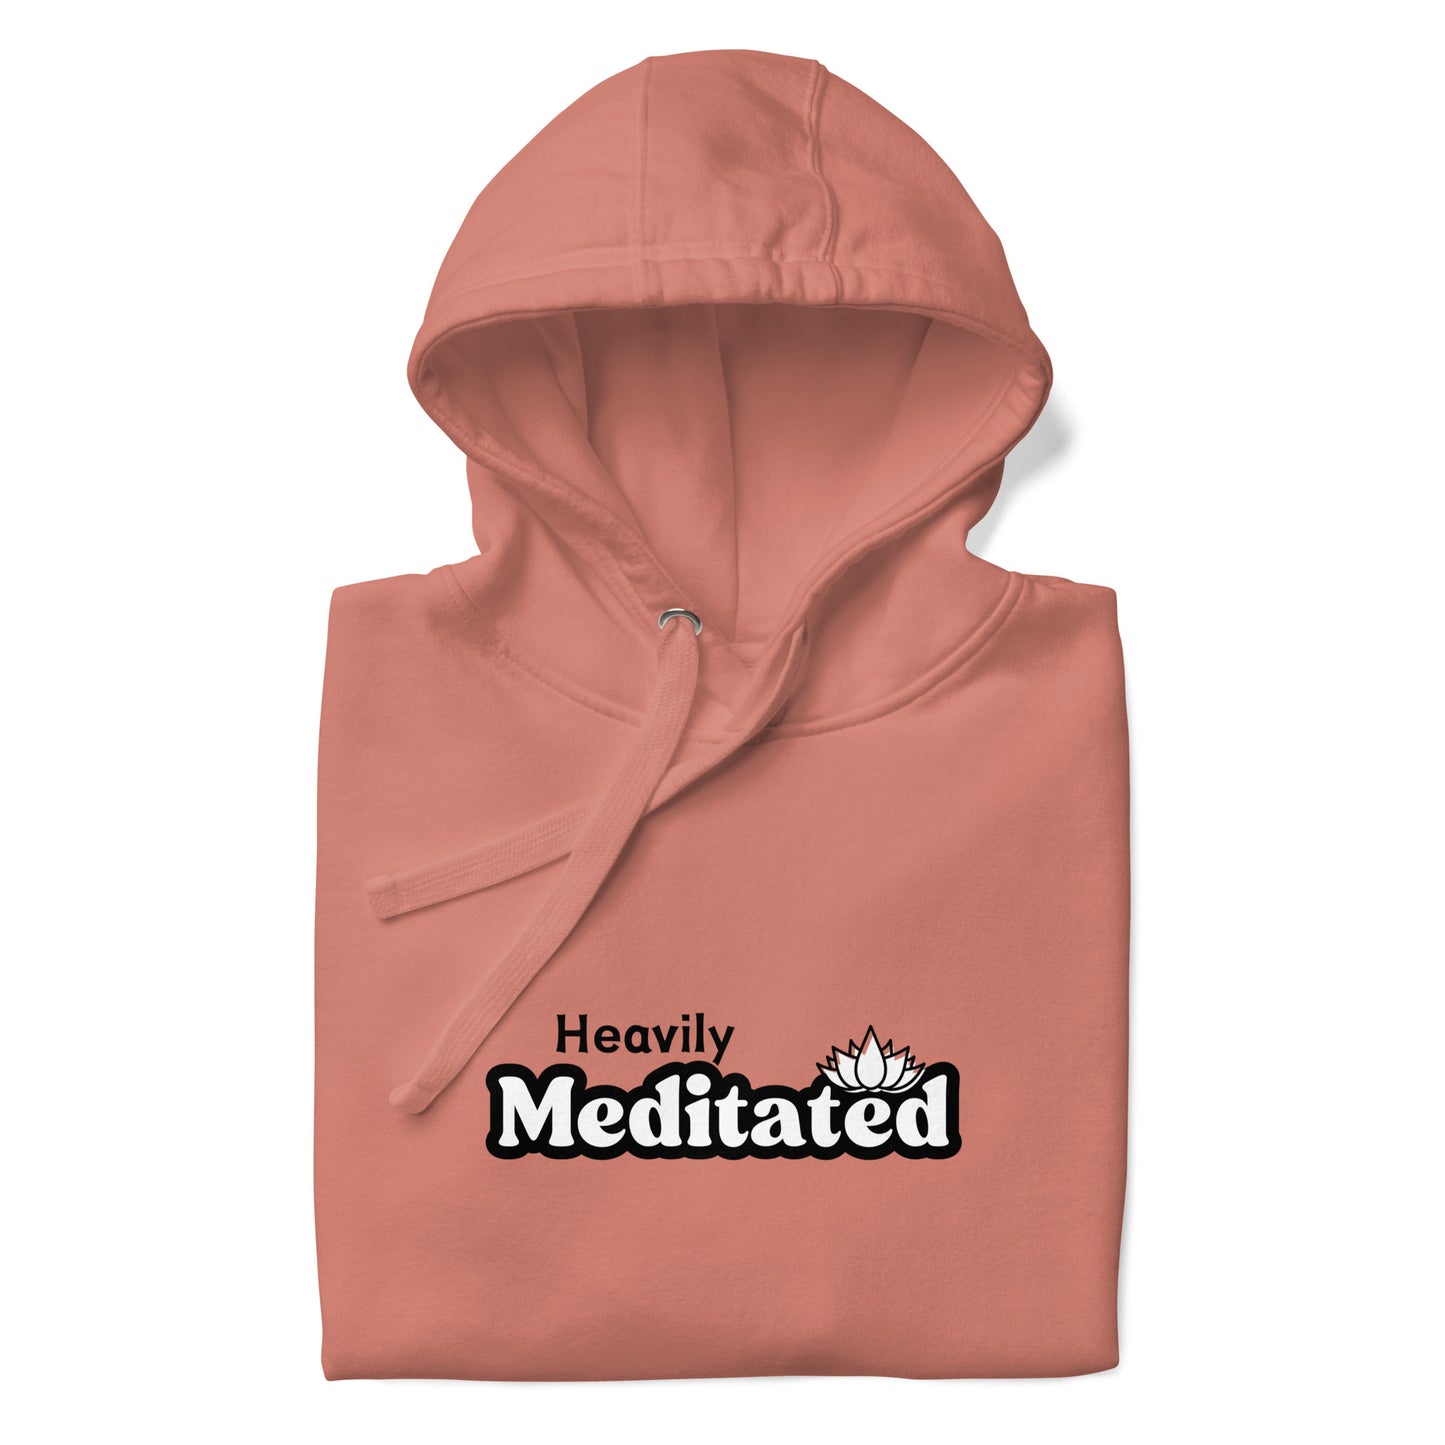 Heavily Meditated Hoodie Sweatshirt